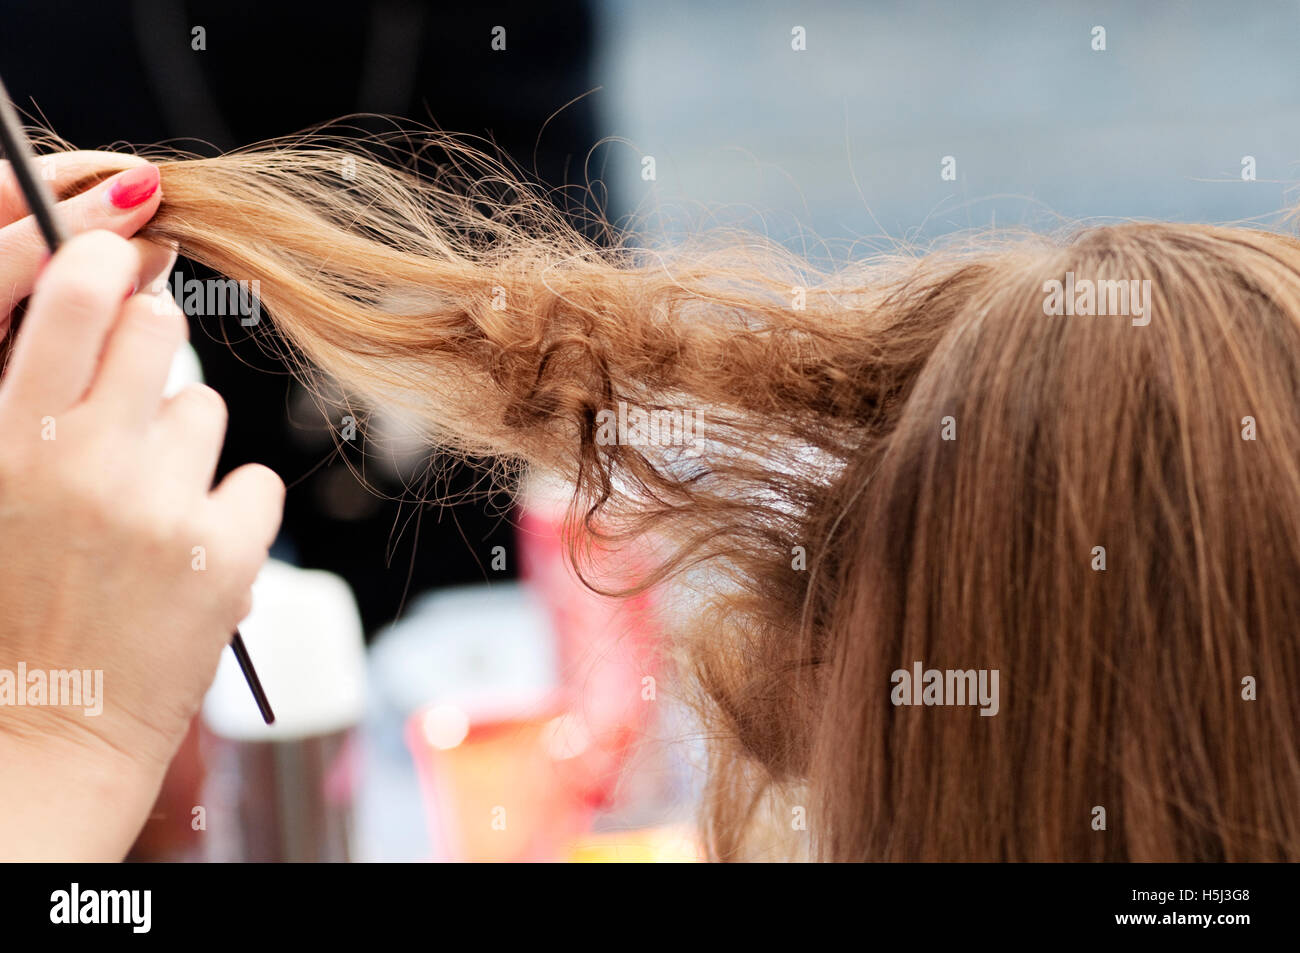 Hair dressing immagini e fotografie stock ad alta risoluzione - Alamy